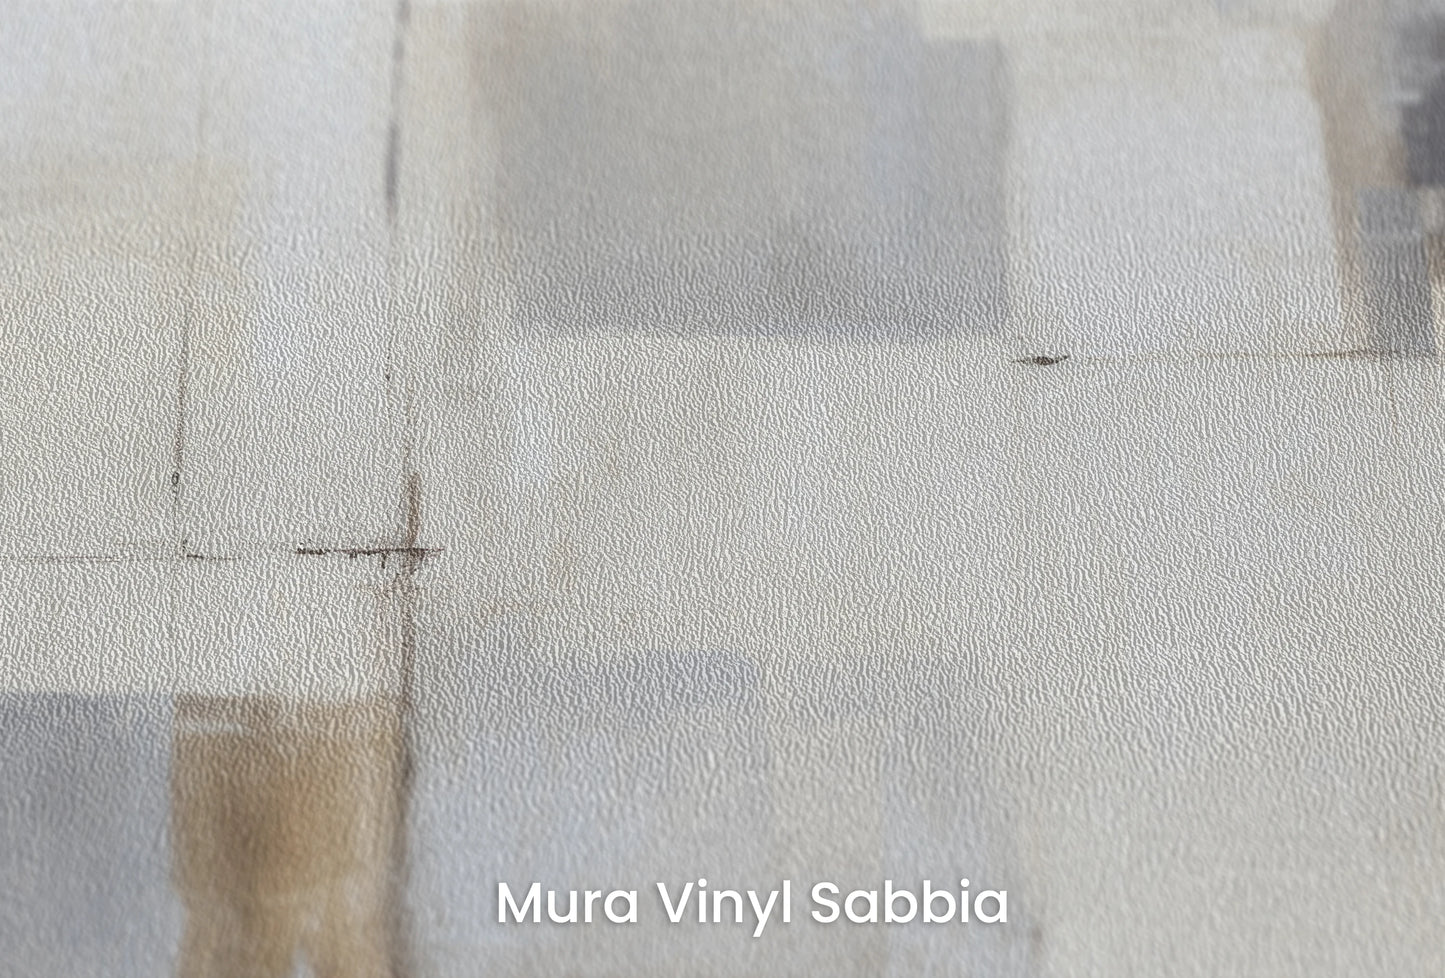 Zbliżenie na artystyczną fototapetę o nazwie Abstract Layers na podłożu Mura Vinyl Sabbia struktura grubego ziarna piasku.